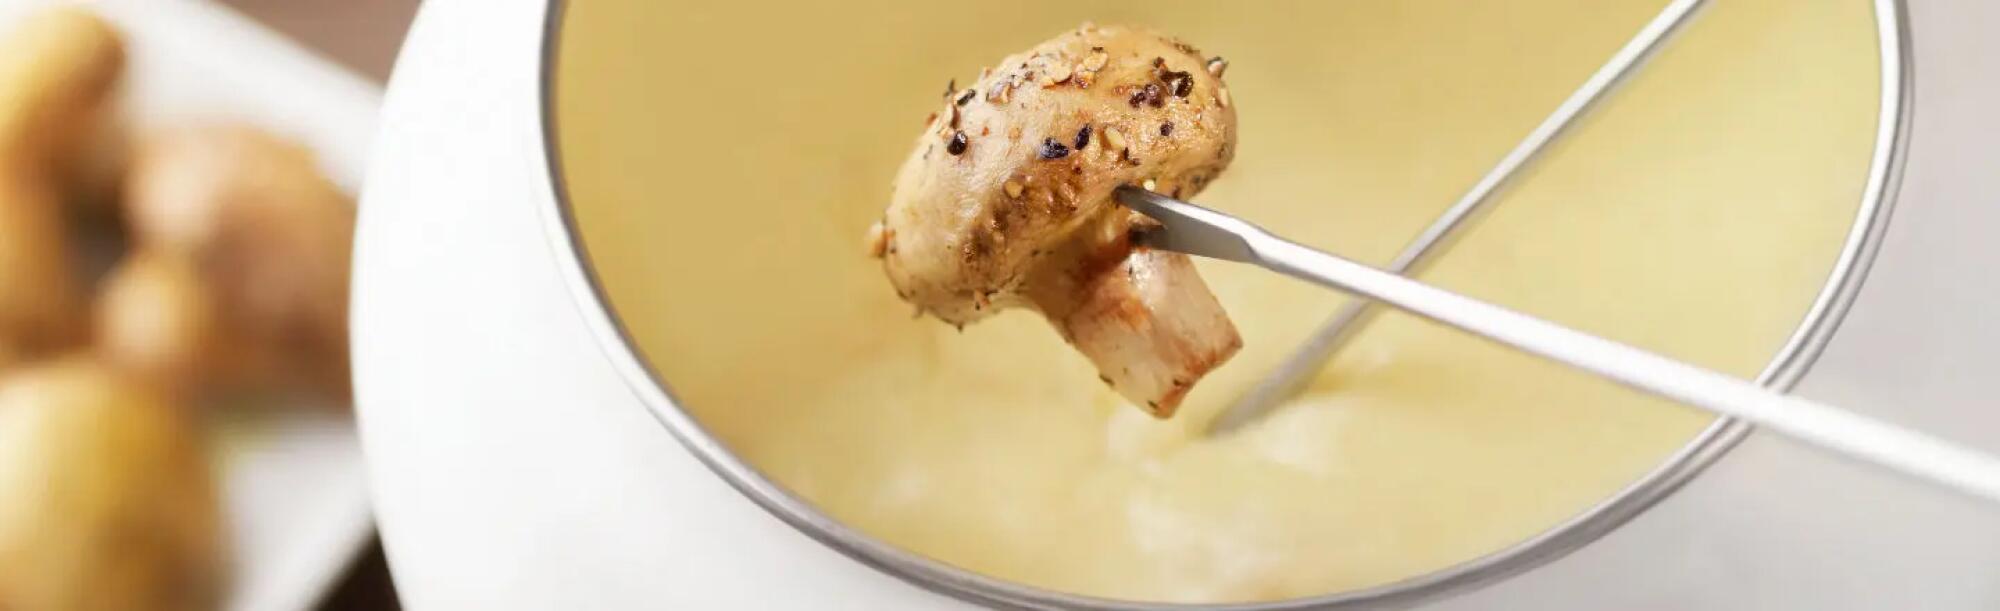 LA02_champignon-fondue